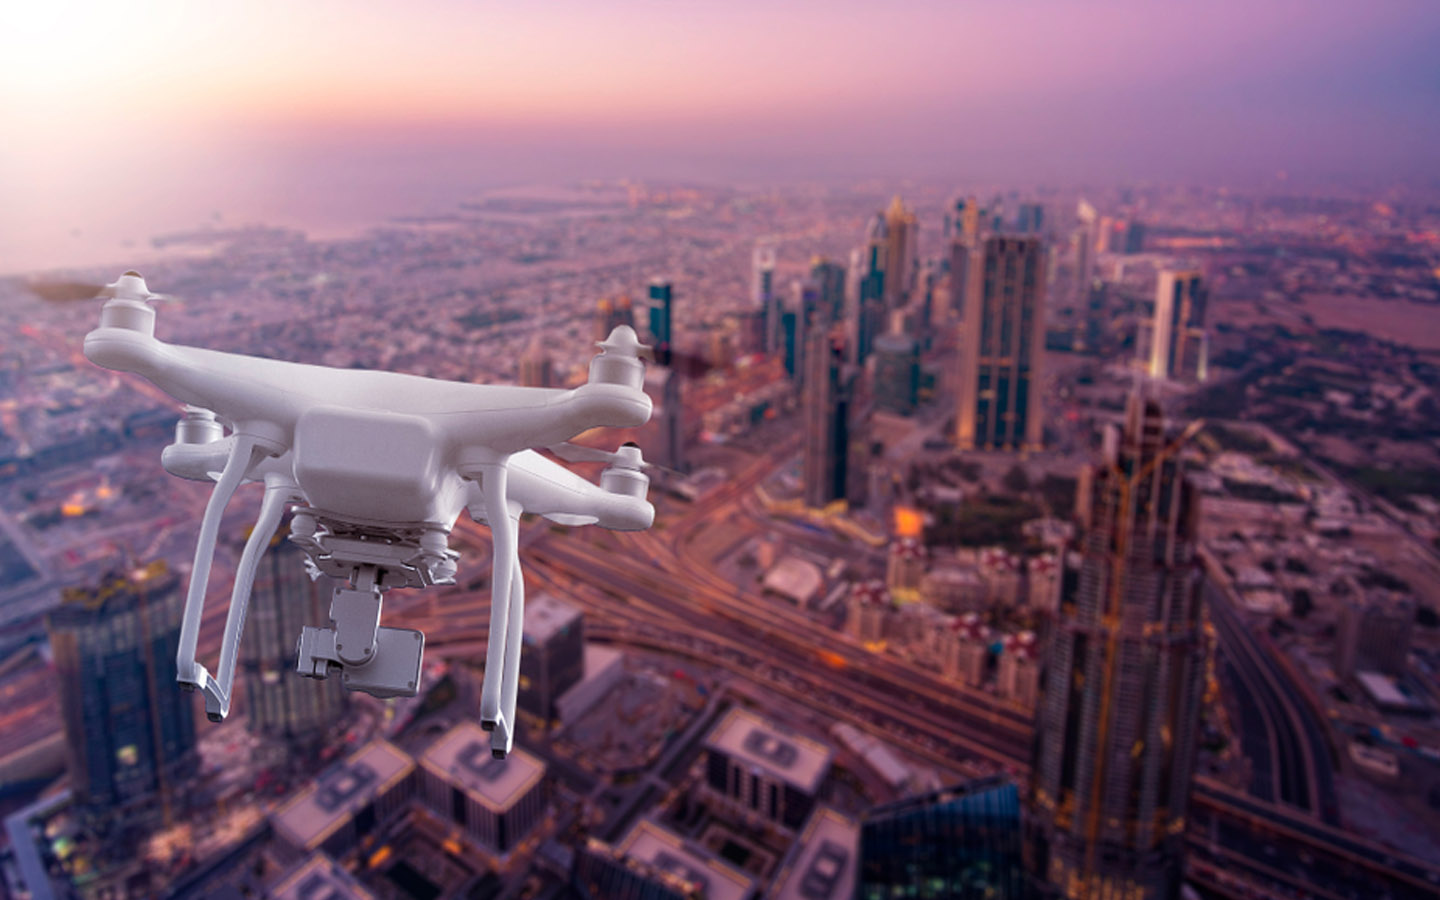 Where To Buy Drone In Dubai